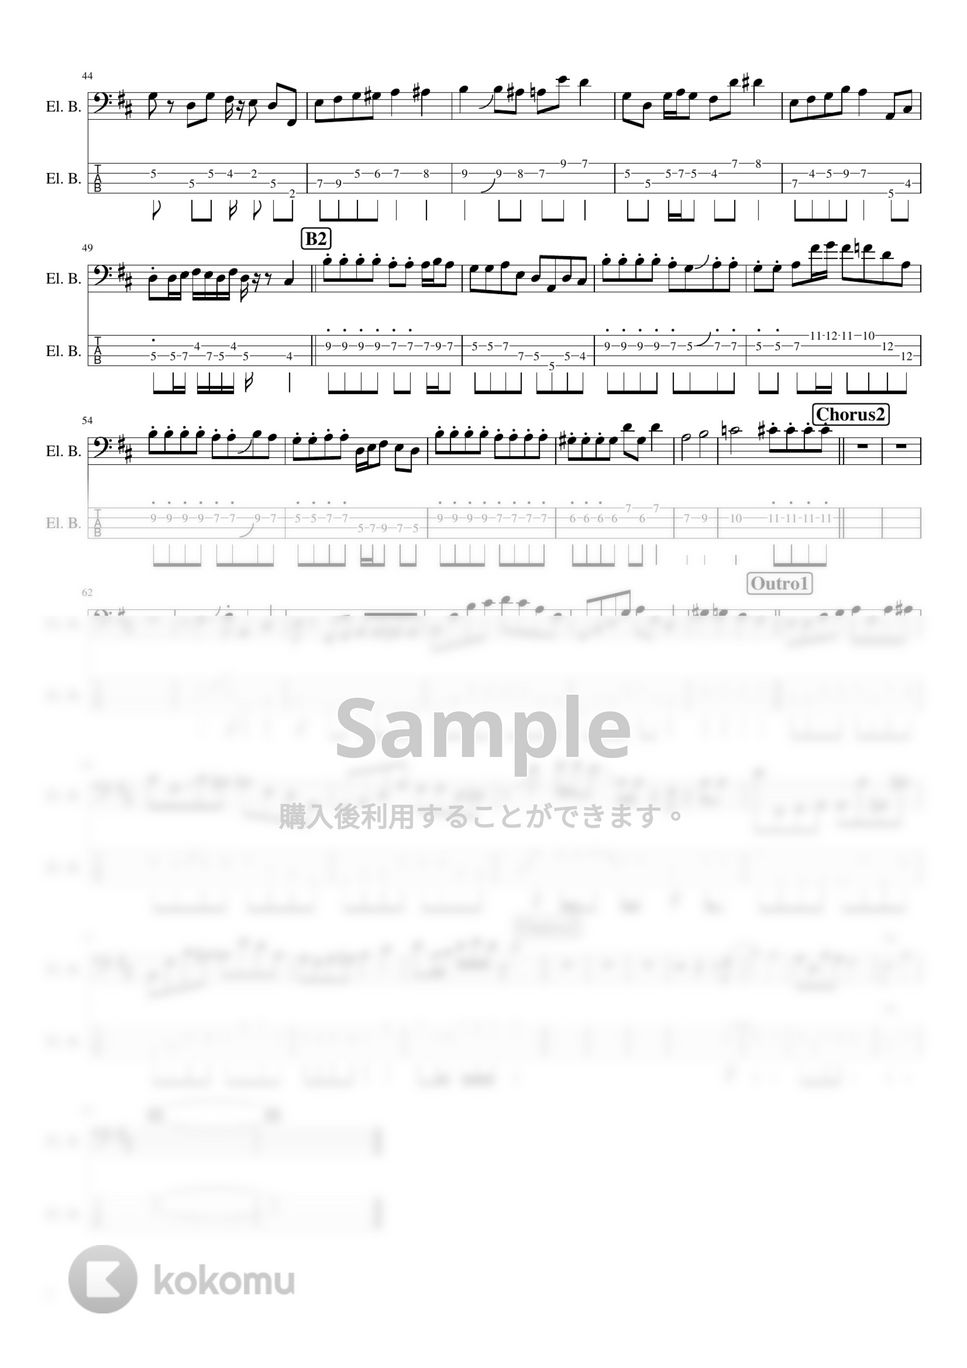 絢香 - にじいろ (ベース / TAB / スコア) by TARUO's_Bass_Score